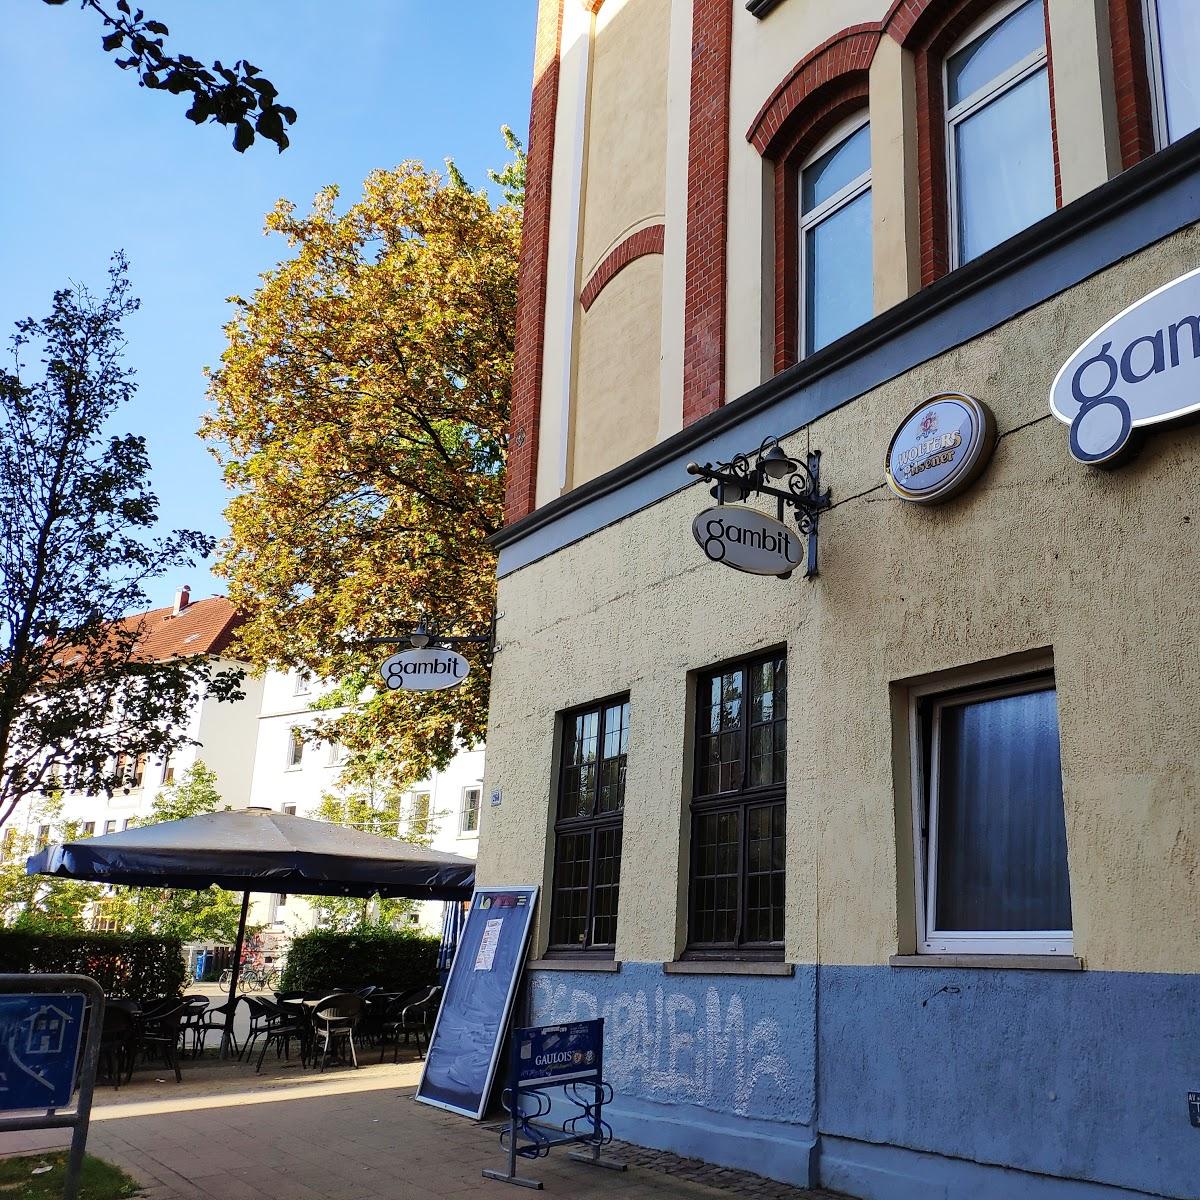 Restaurant "Gambit" in Braunschweig